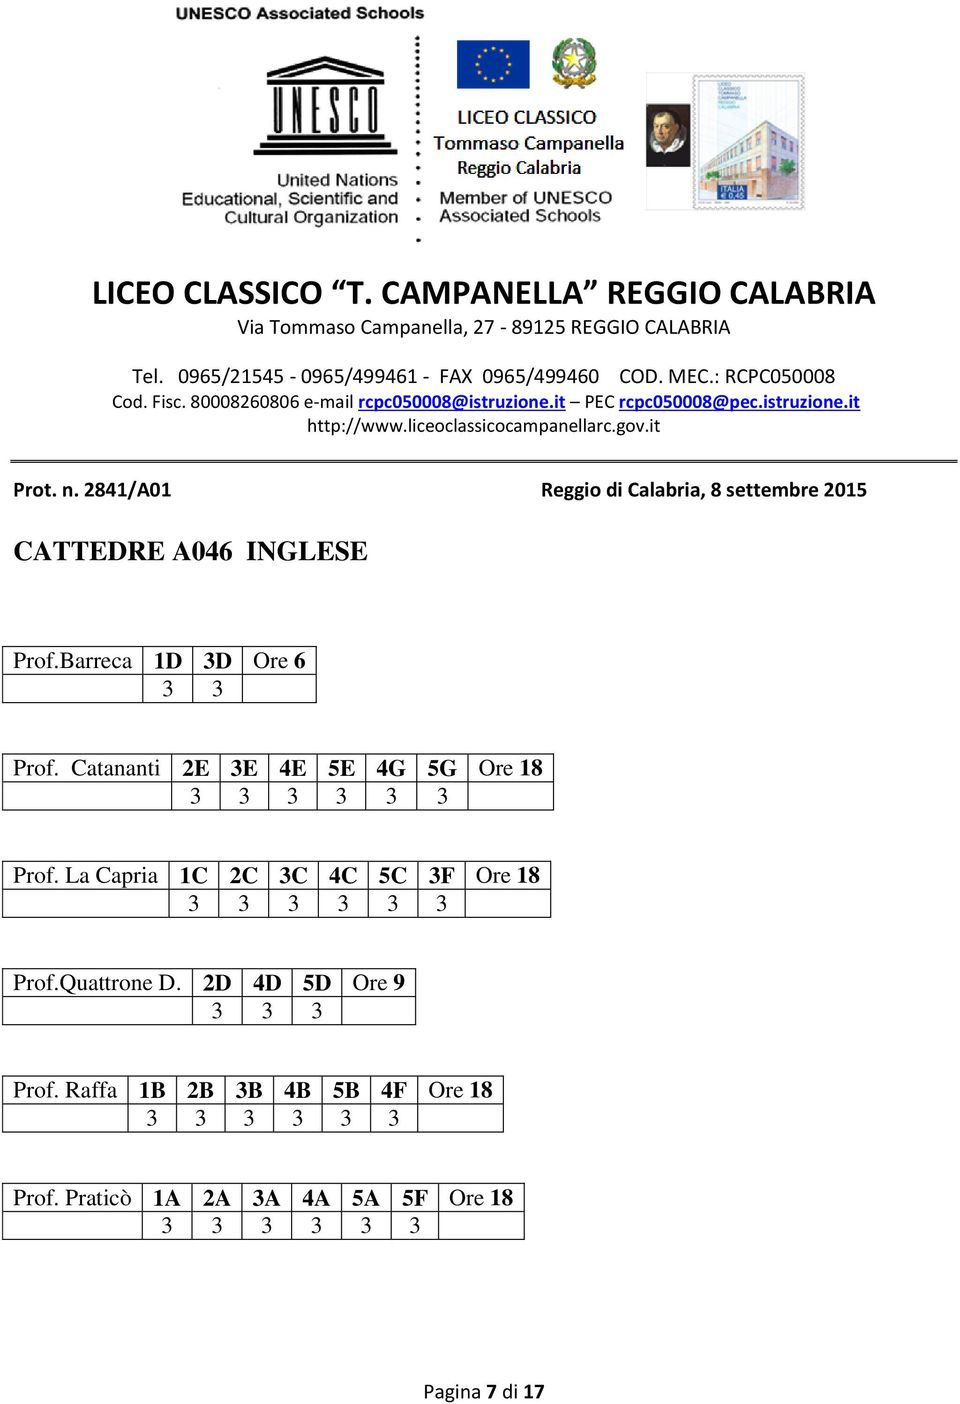 La Capria 1C 2C 3C 4C 5C 3F Ore 18 3 3 3 3 3 3 Prof.Quattrone D.